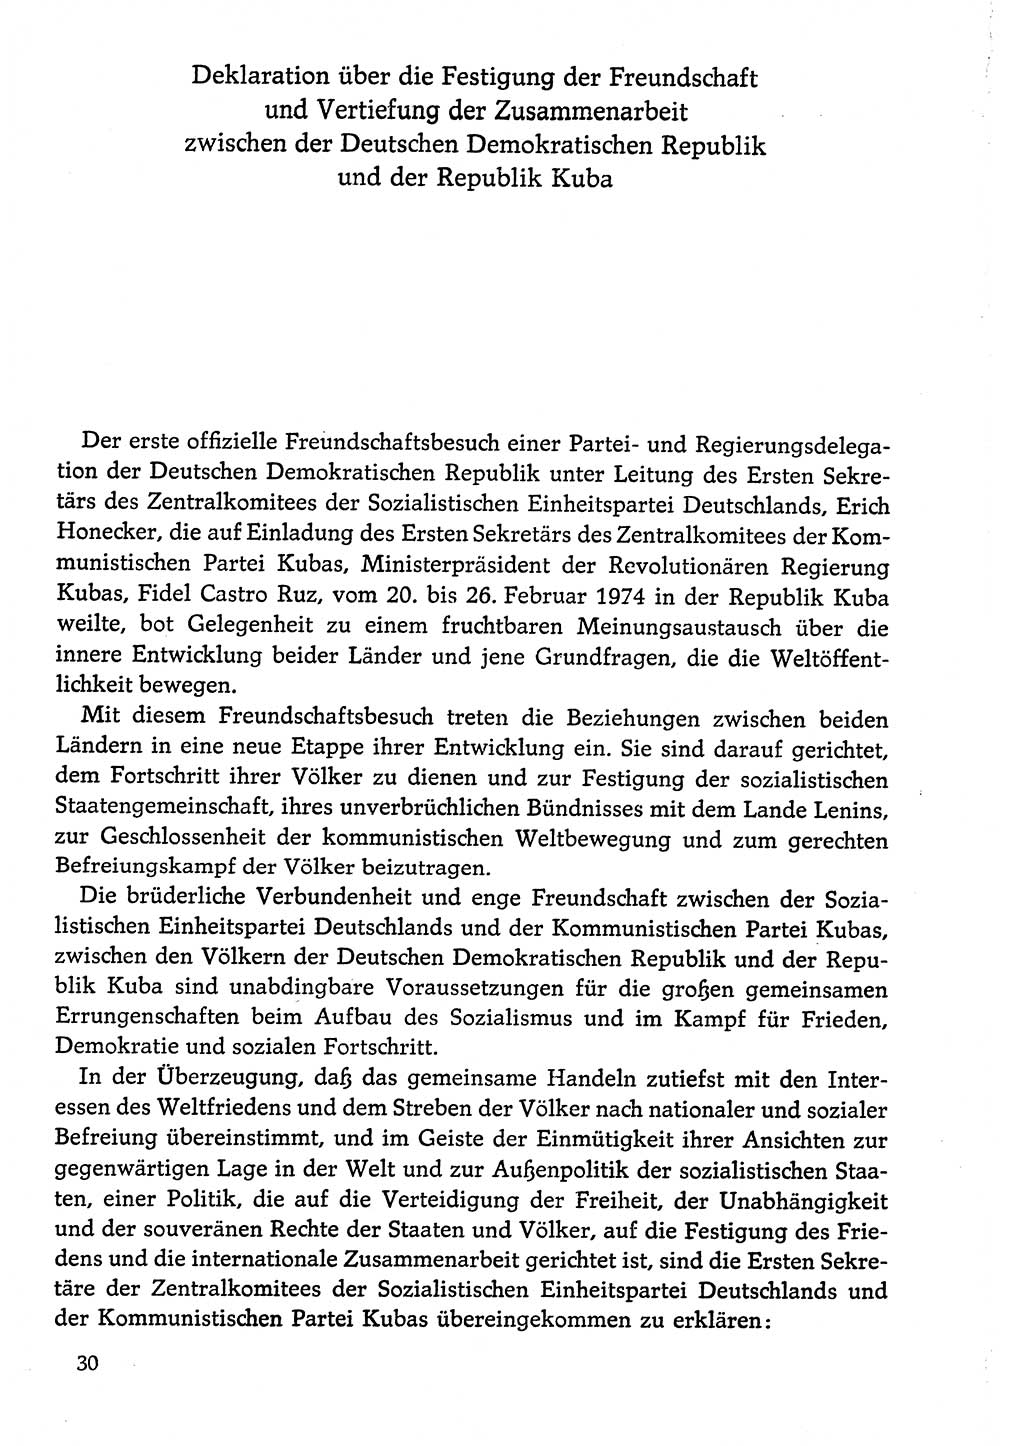 Dokumente der Sozialistischen Einheitspartei Deutschlands (SED) [Deutsche Demokratische Republik (DDR)] 1974-1975, Seite 30 (Dok. SED DDR 1978, Bd. ⅩⅤ, S. 30)